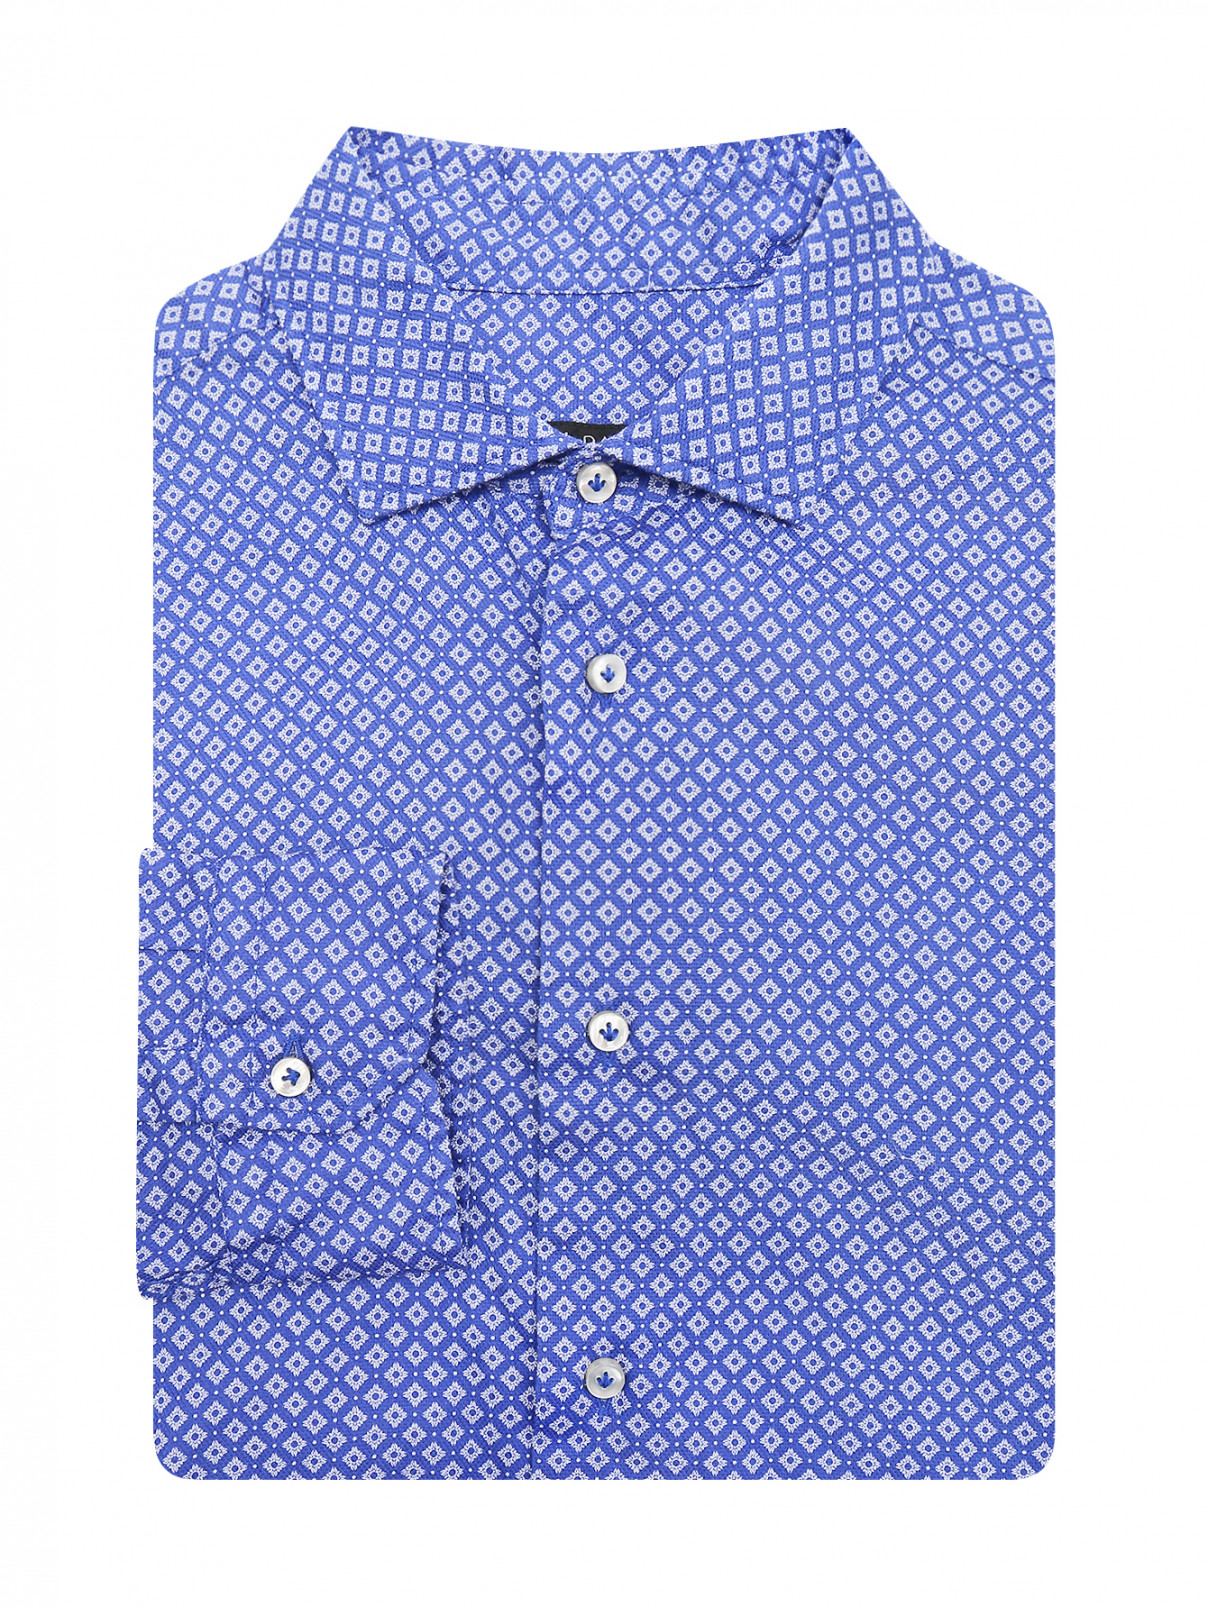 Рубашка из хлопка с узором Brian Dales  –  Общий вид  – Цвет:  Узор